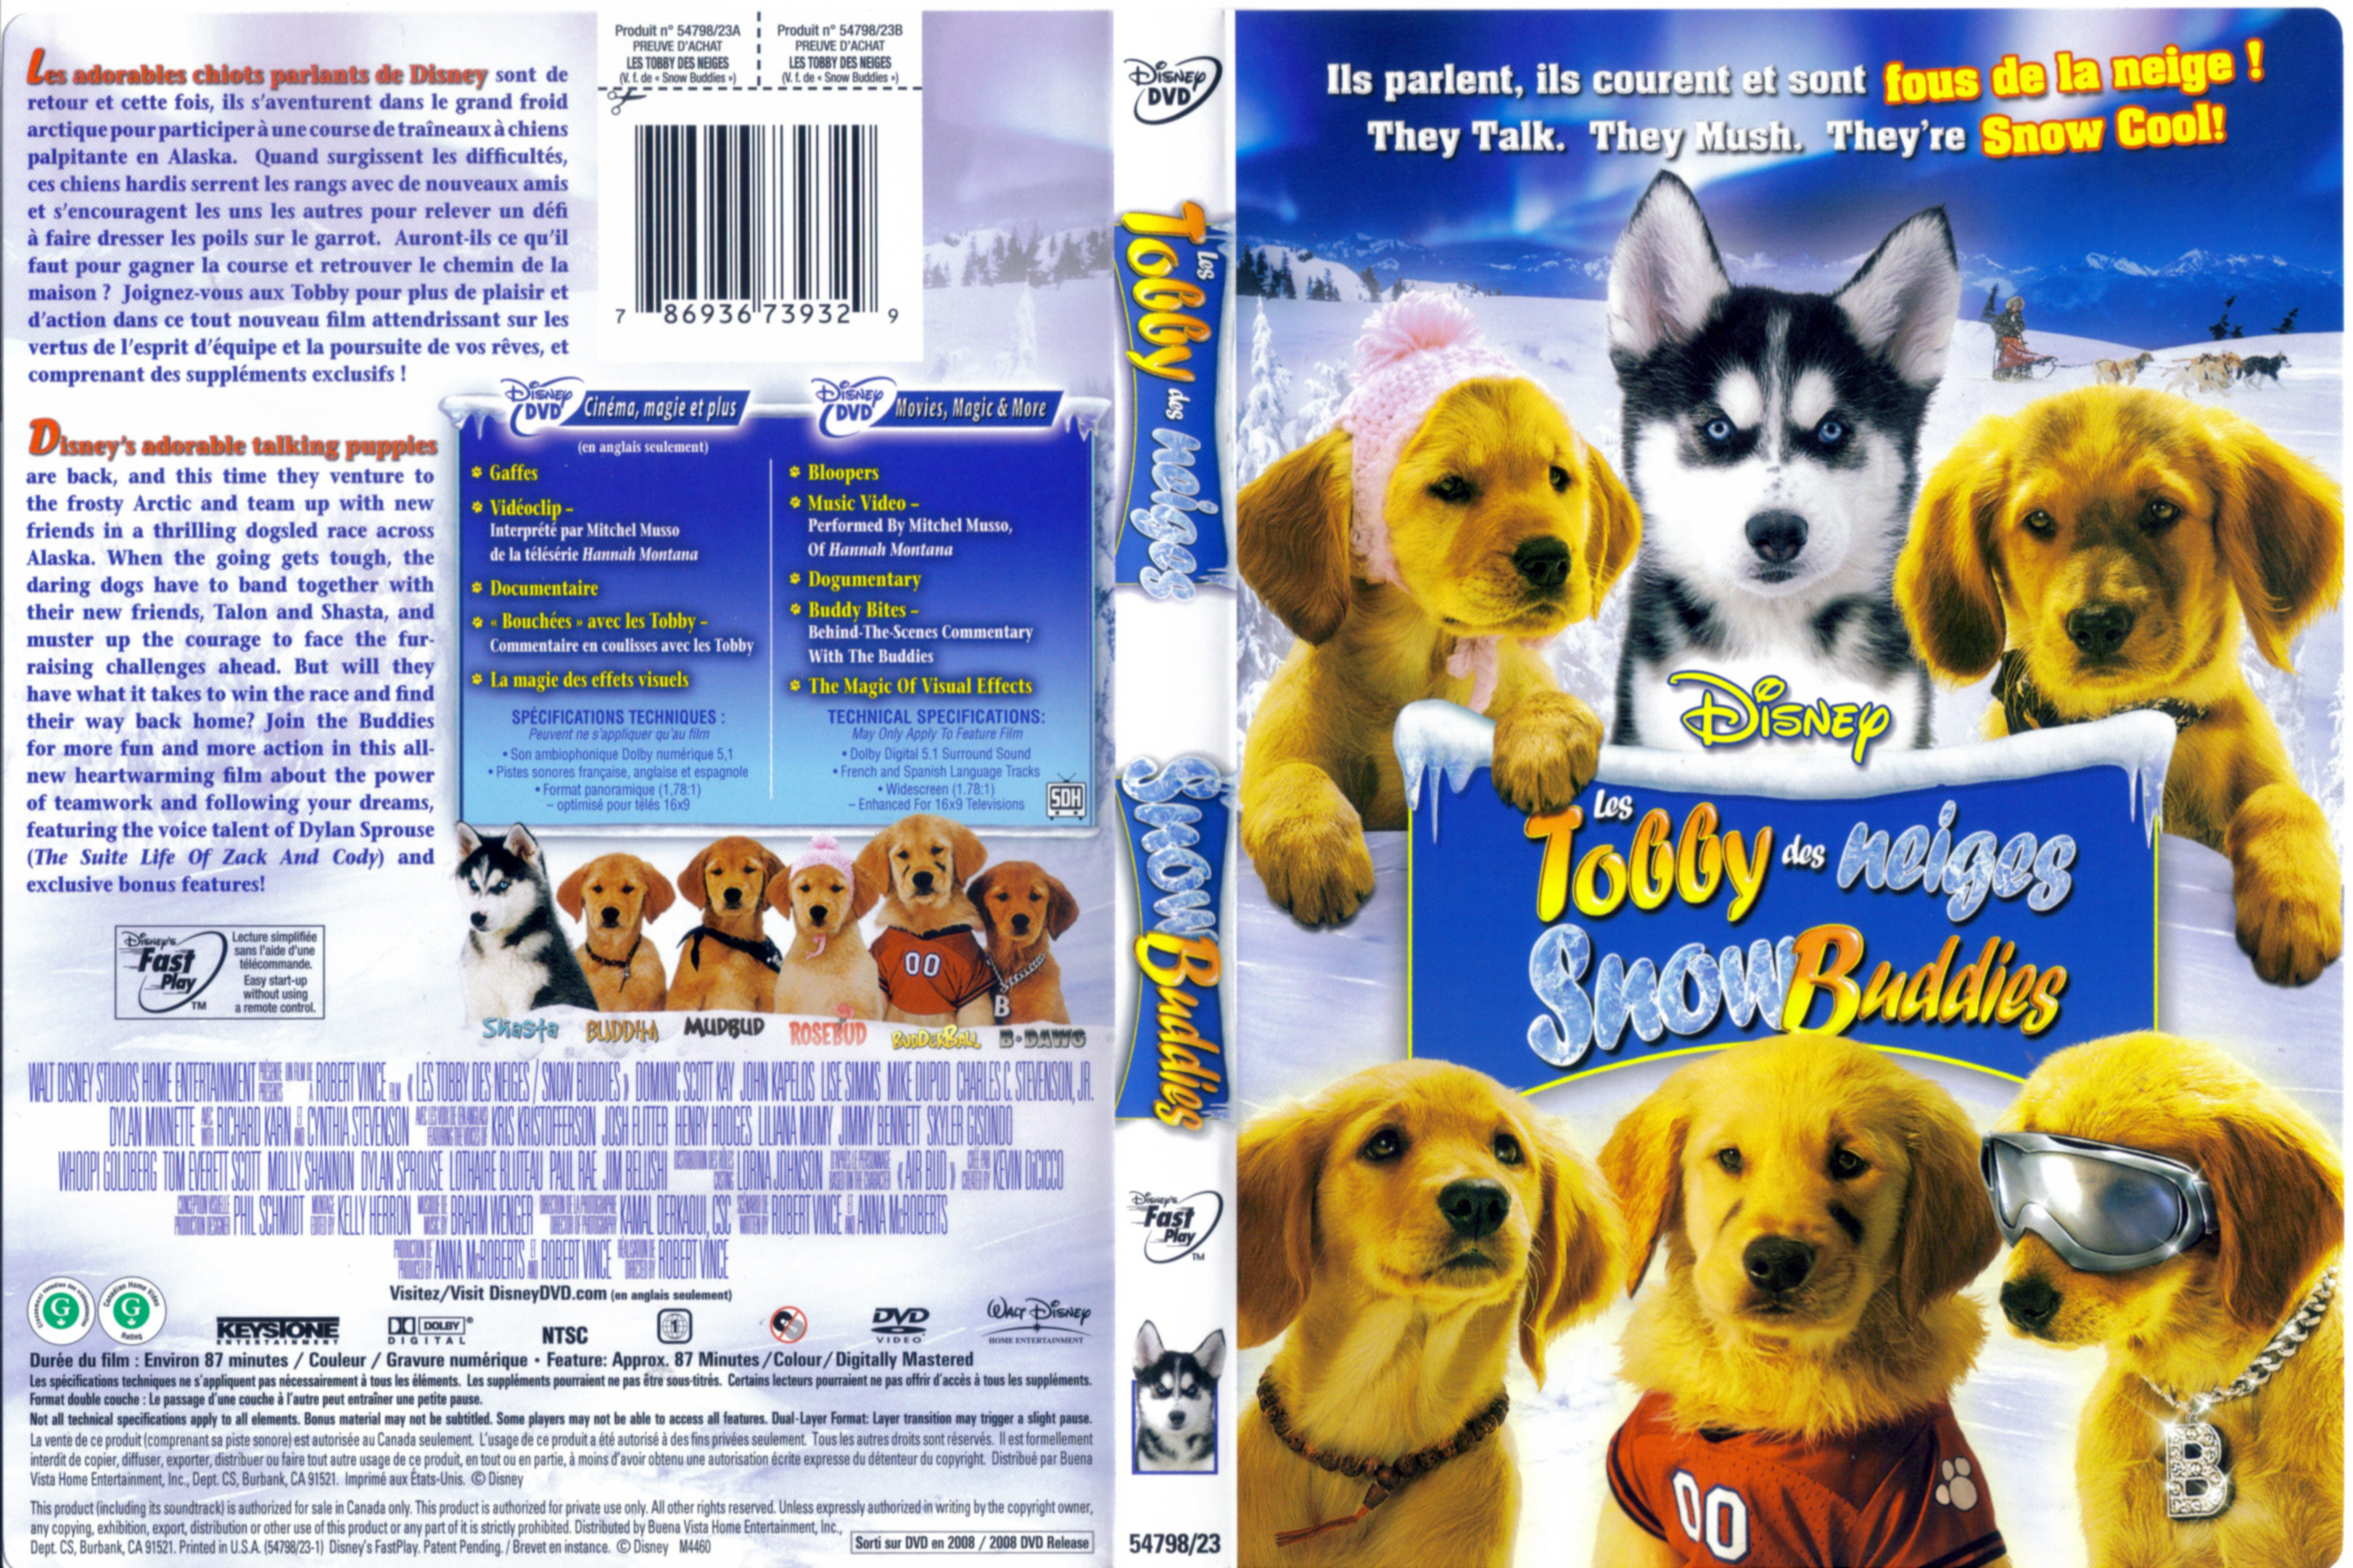 Jaquette DVD Les Tobby des neiges - Snow buddies